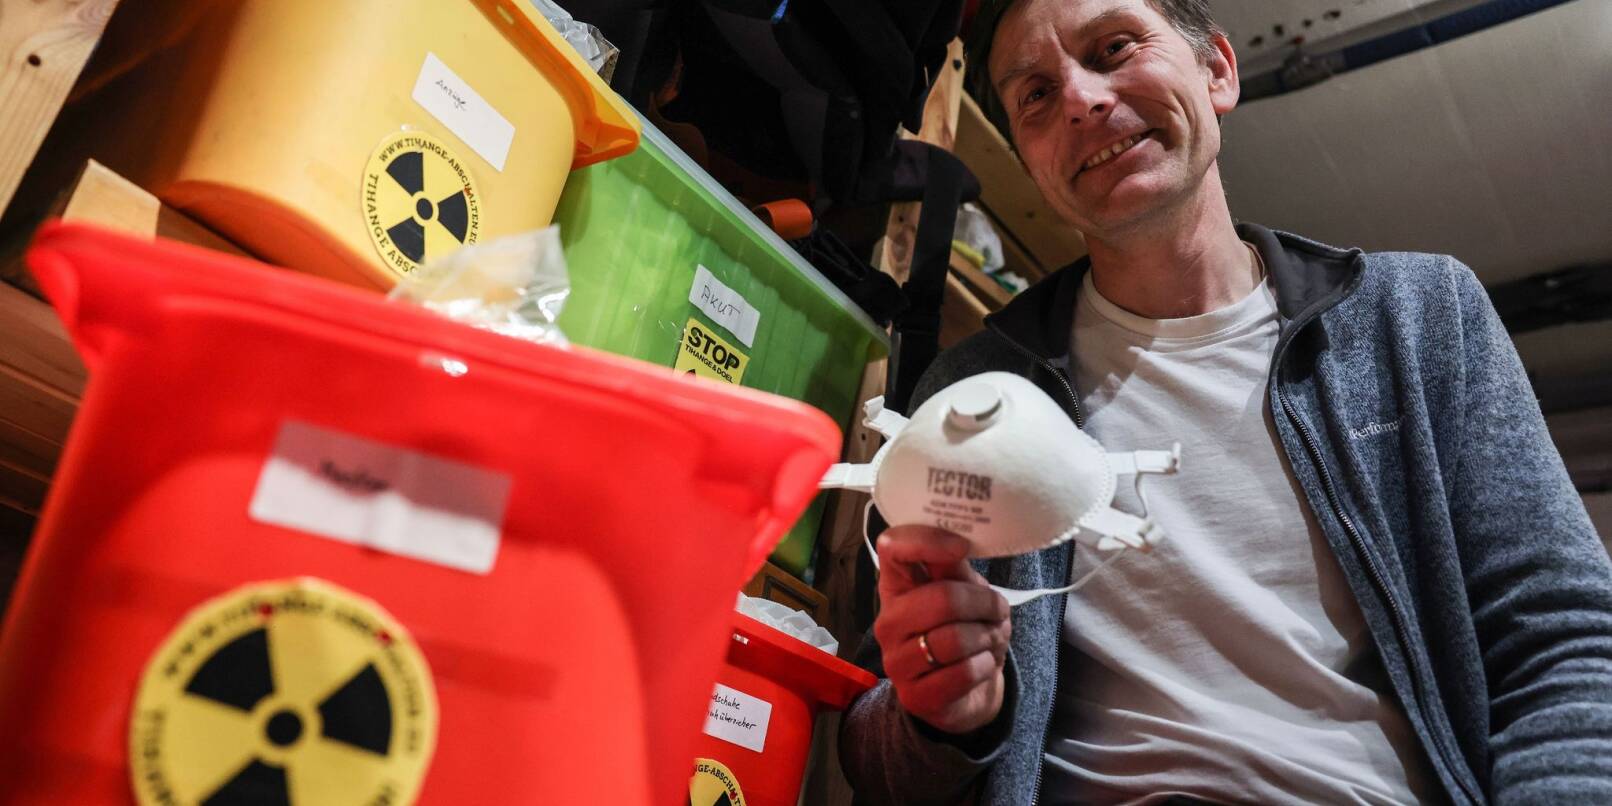 Der Anti-Atomkraft-Aktivist Gereon Hermens sitzt in seinem Keller neben Kisten mit Schutzausrüstungen.